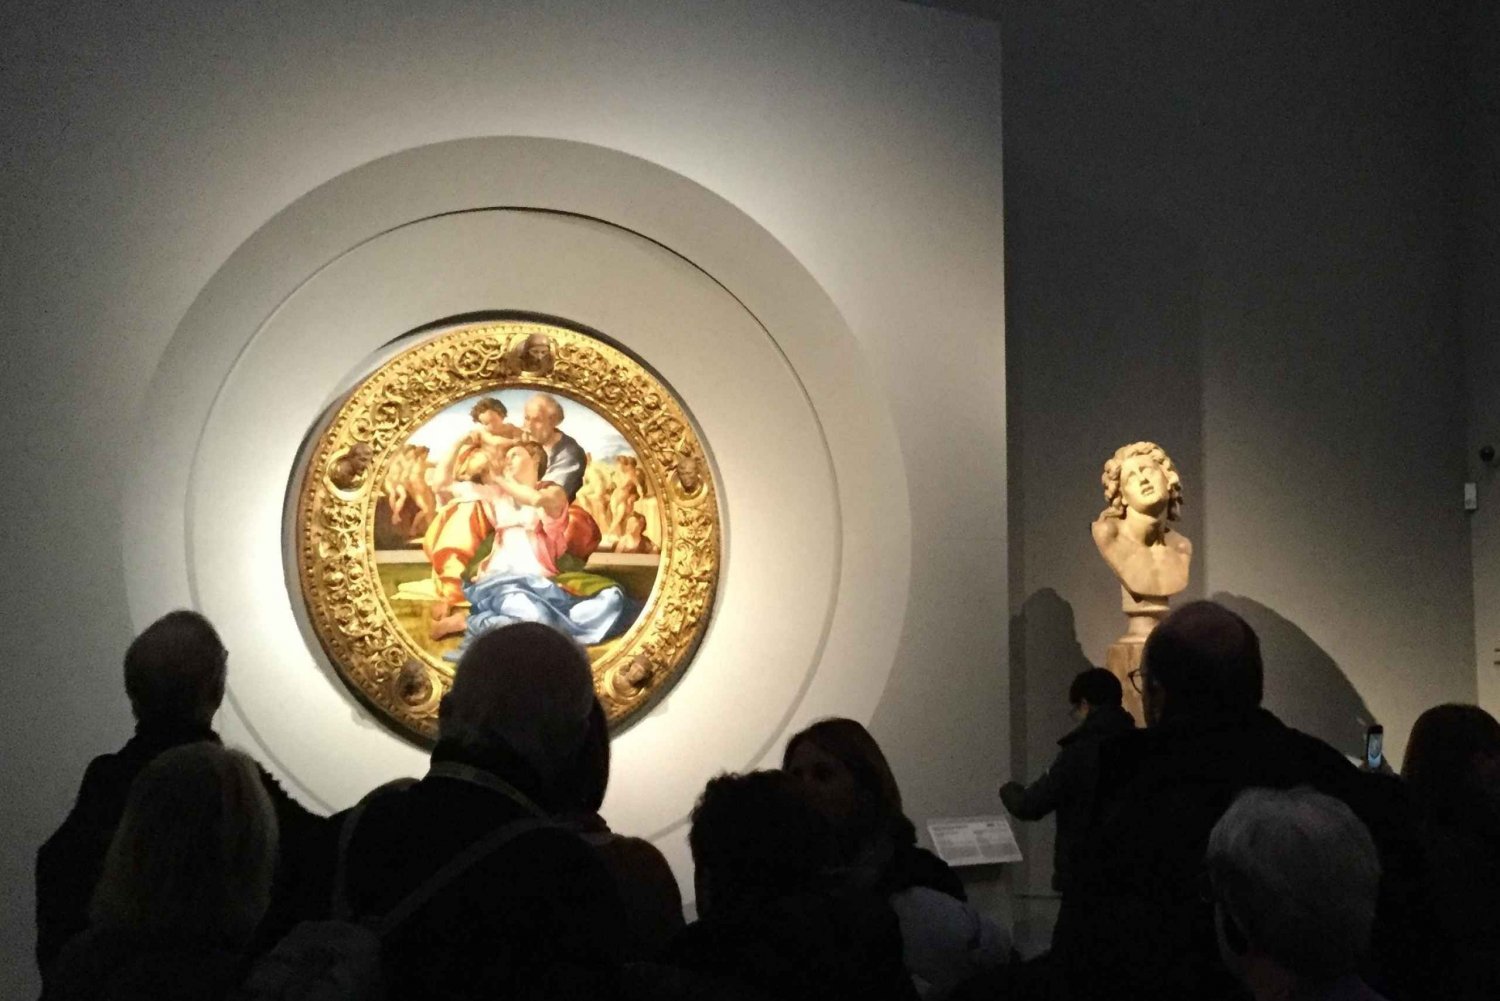 Firenze: Accademia ja Uffizin galleriat - 4-tuntinen opastettu kierros.